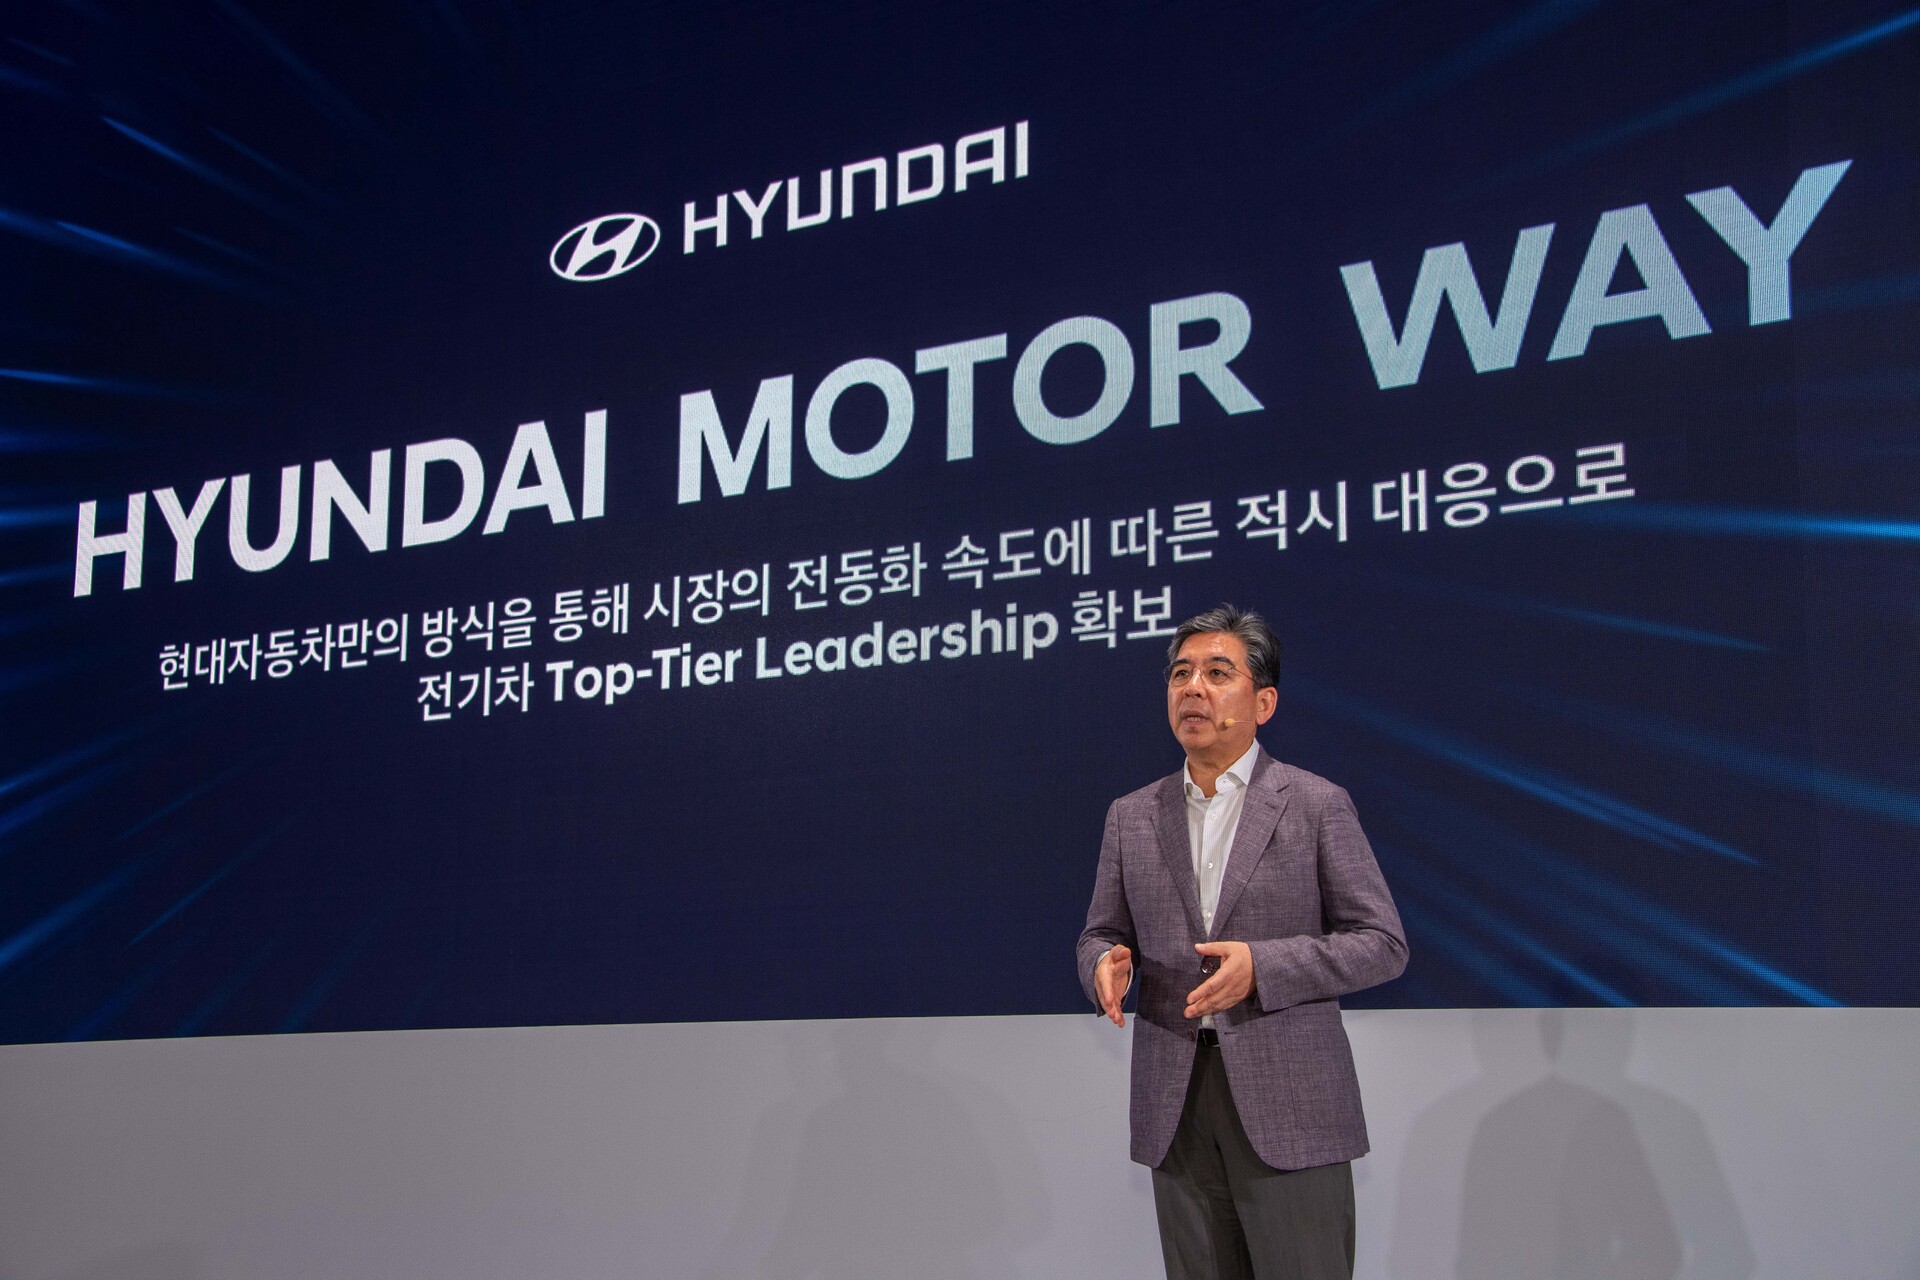 Hyundai CEO